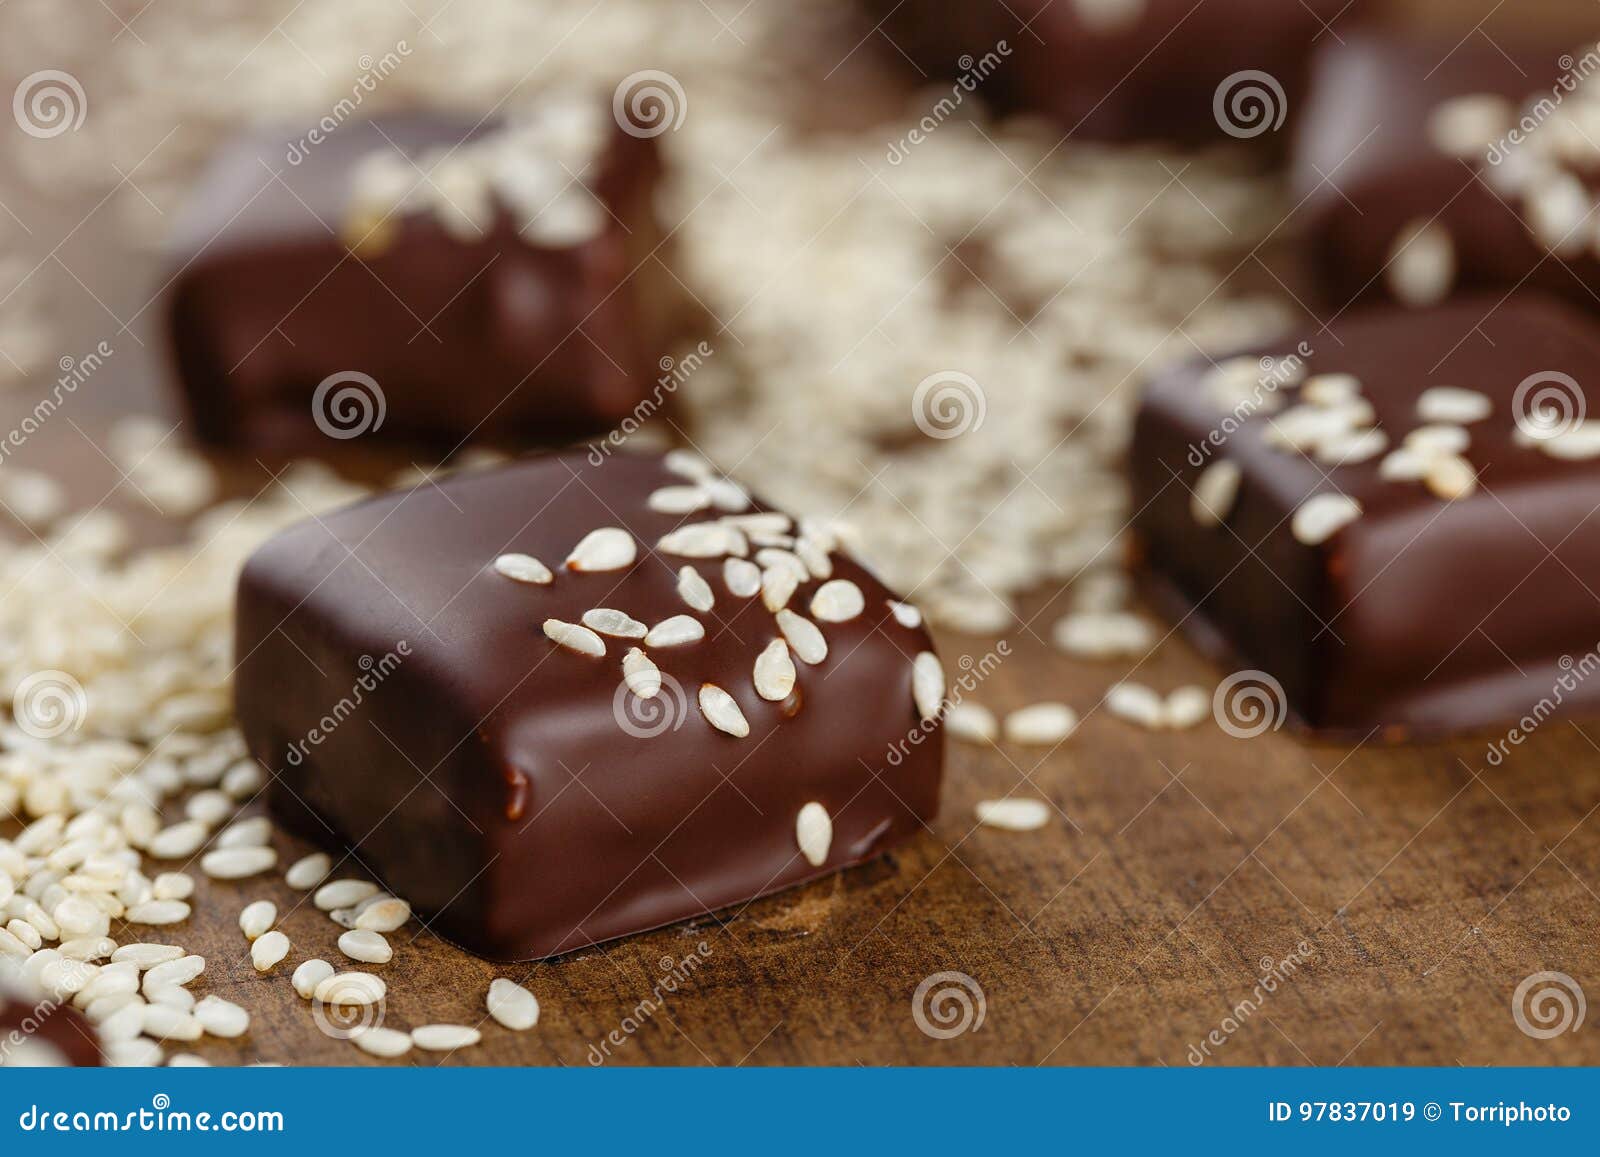 Bonbon au chocolat fait maison